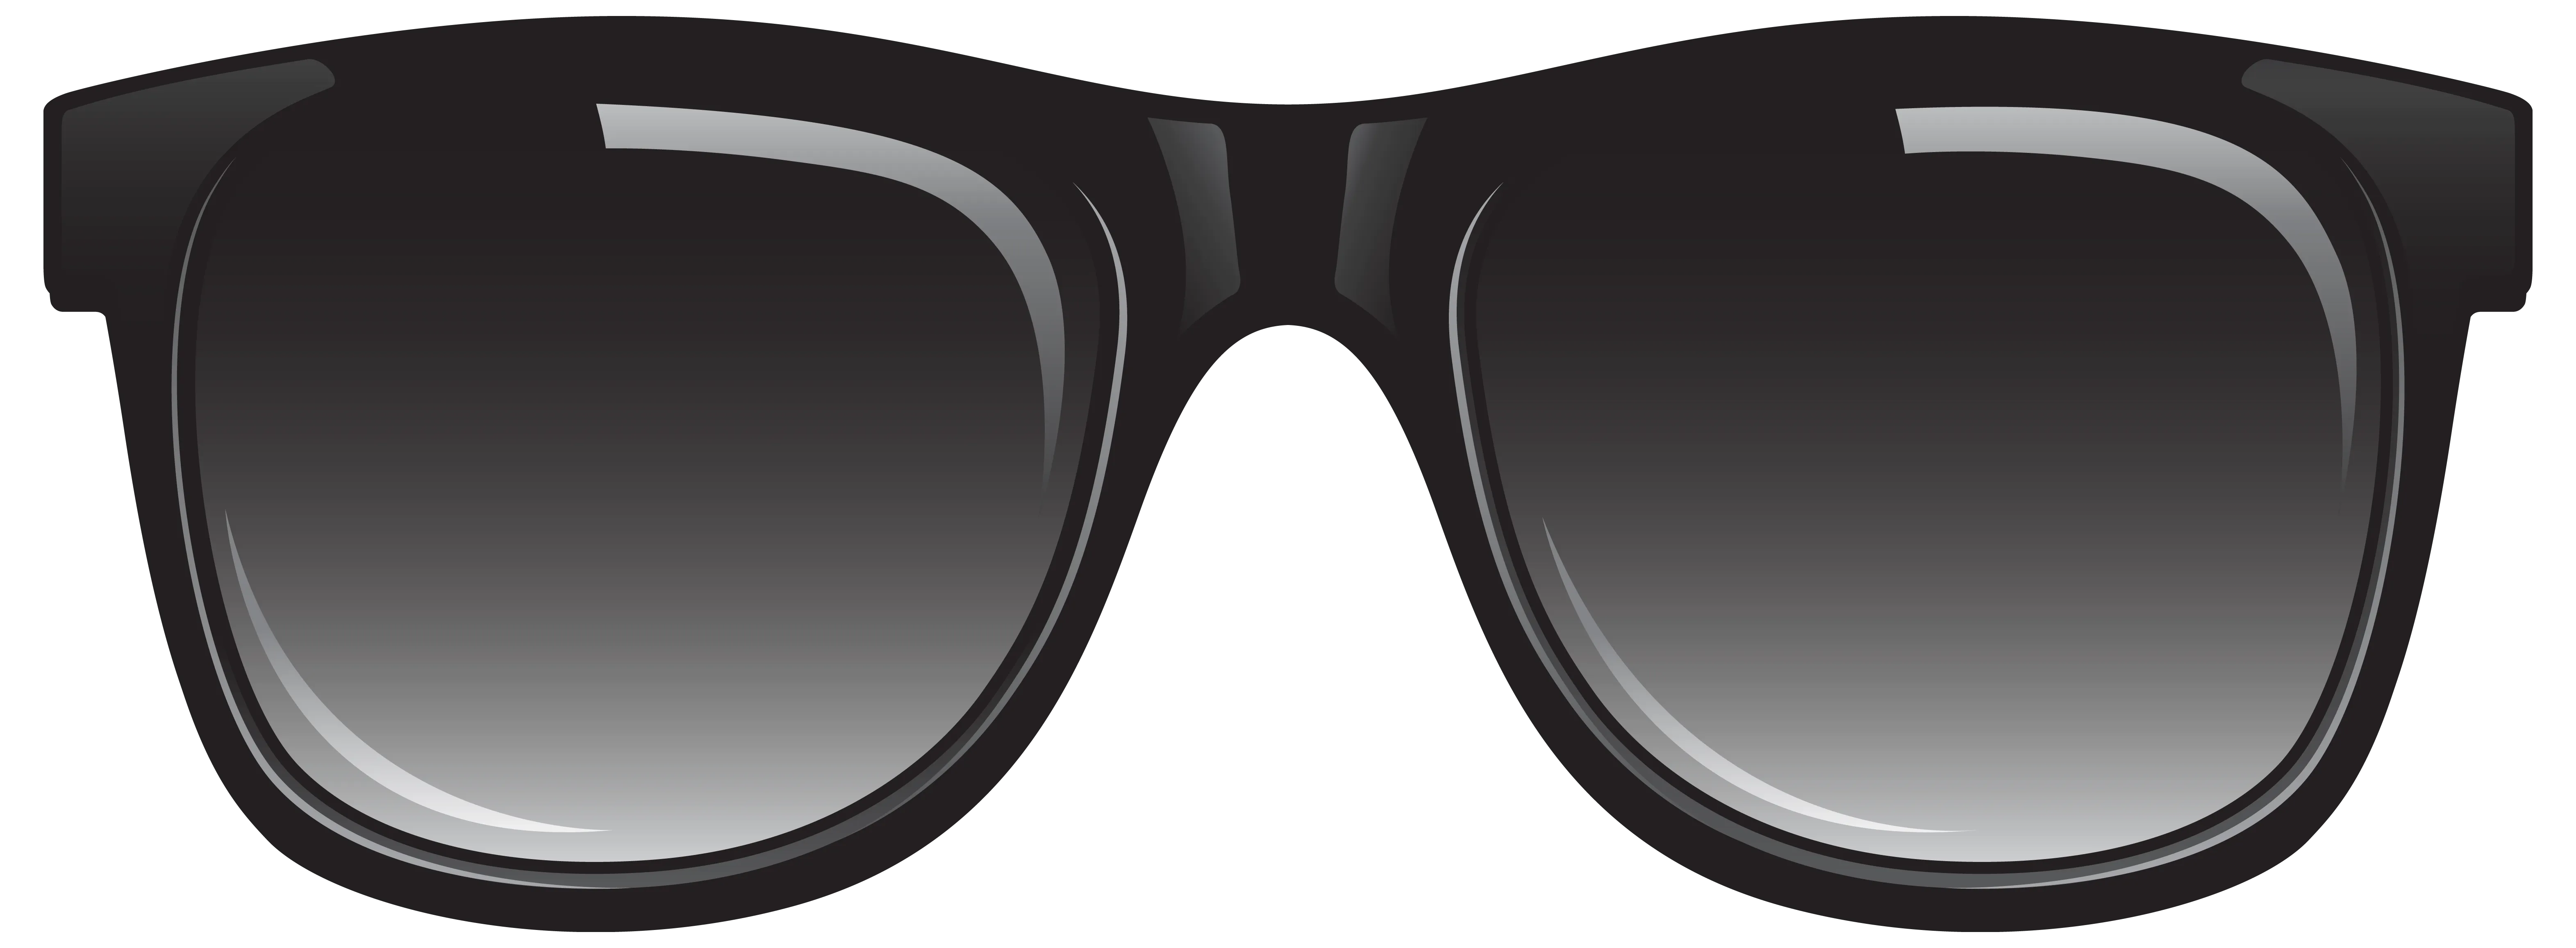 太阳镜日常用品眼镜太阳镜png 太阳镜png图片 Ppt素材 免抠素材 Ppter吧